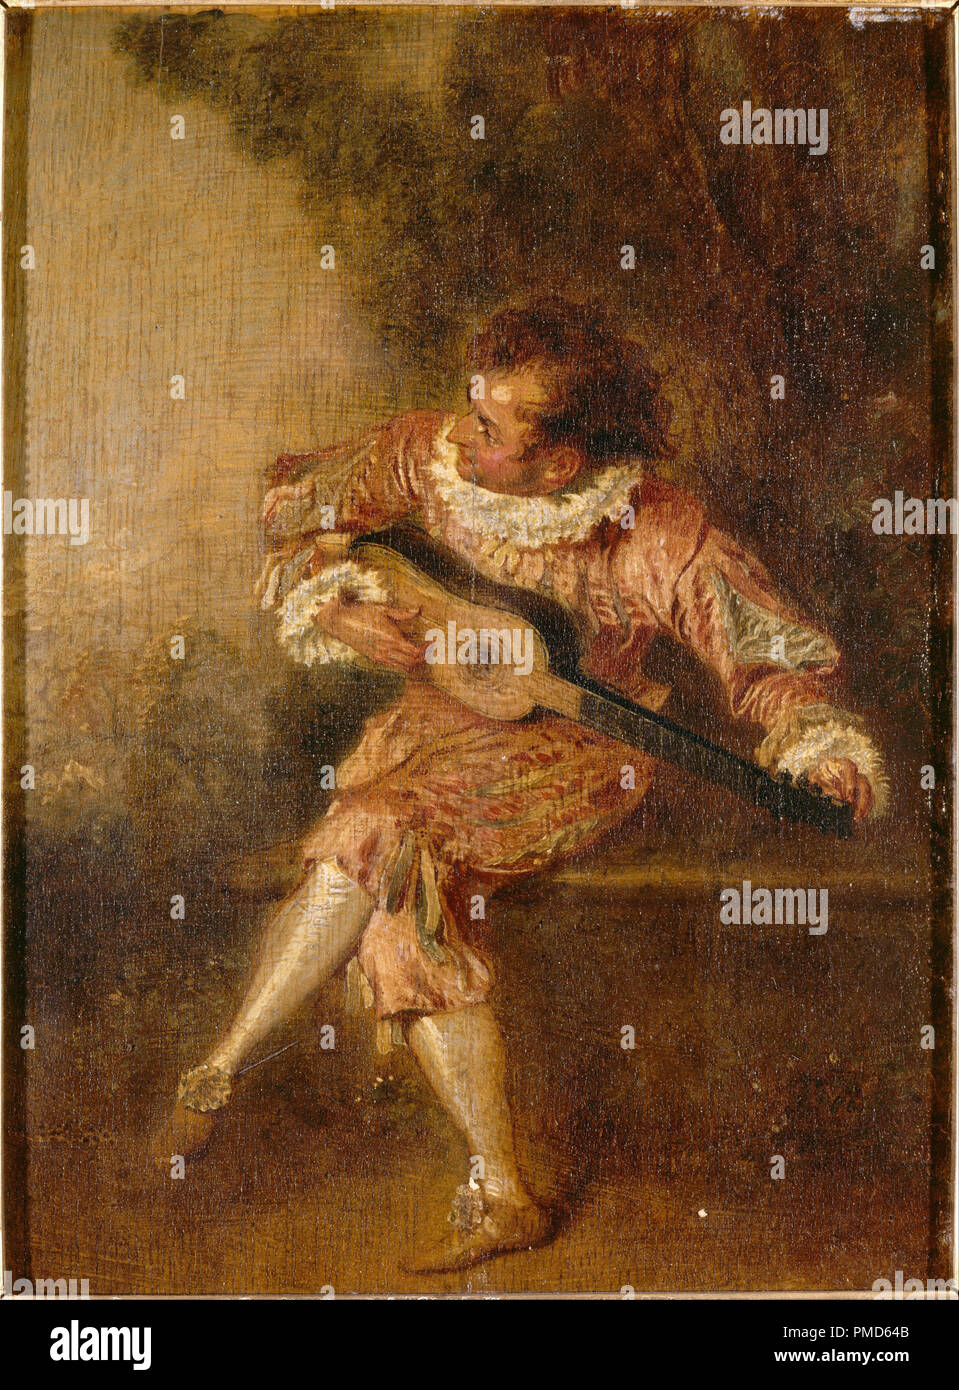 Le donneur de sérénades (Mezetin). Data/Periodo: ca. 1715. La pittura. Olio su pannello. Altezza: 240 mm (9,44 in); larghezza: 175 mm (6,88 in). Autore: Antoine Watteau. WATTEAU, ANTOINE. Watteau, Jean Antoine. Foto Stock